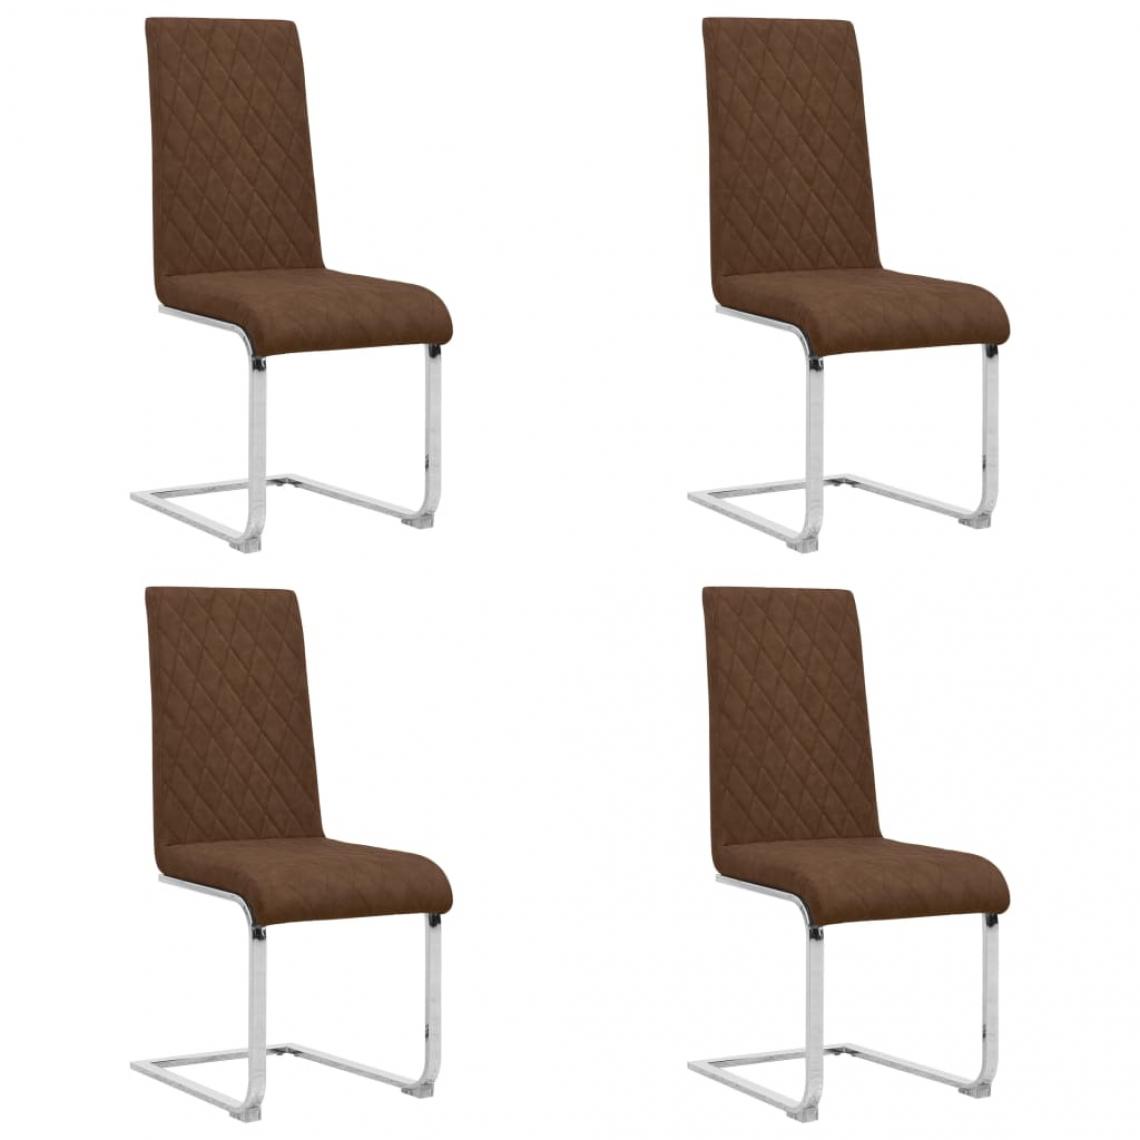 Decoshop26 - Lot de 4 chaises de salle à manger cuisine cantilever design moderne similicuir marron CDS021408 - Chaises